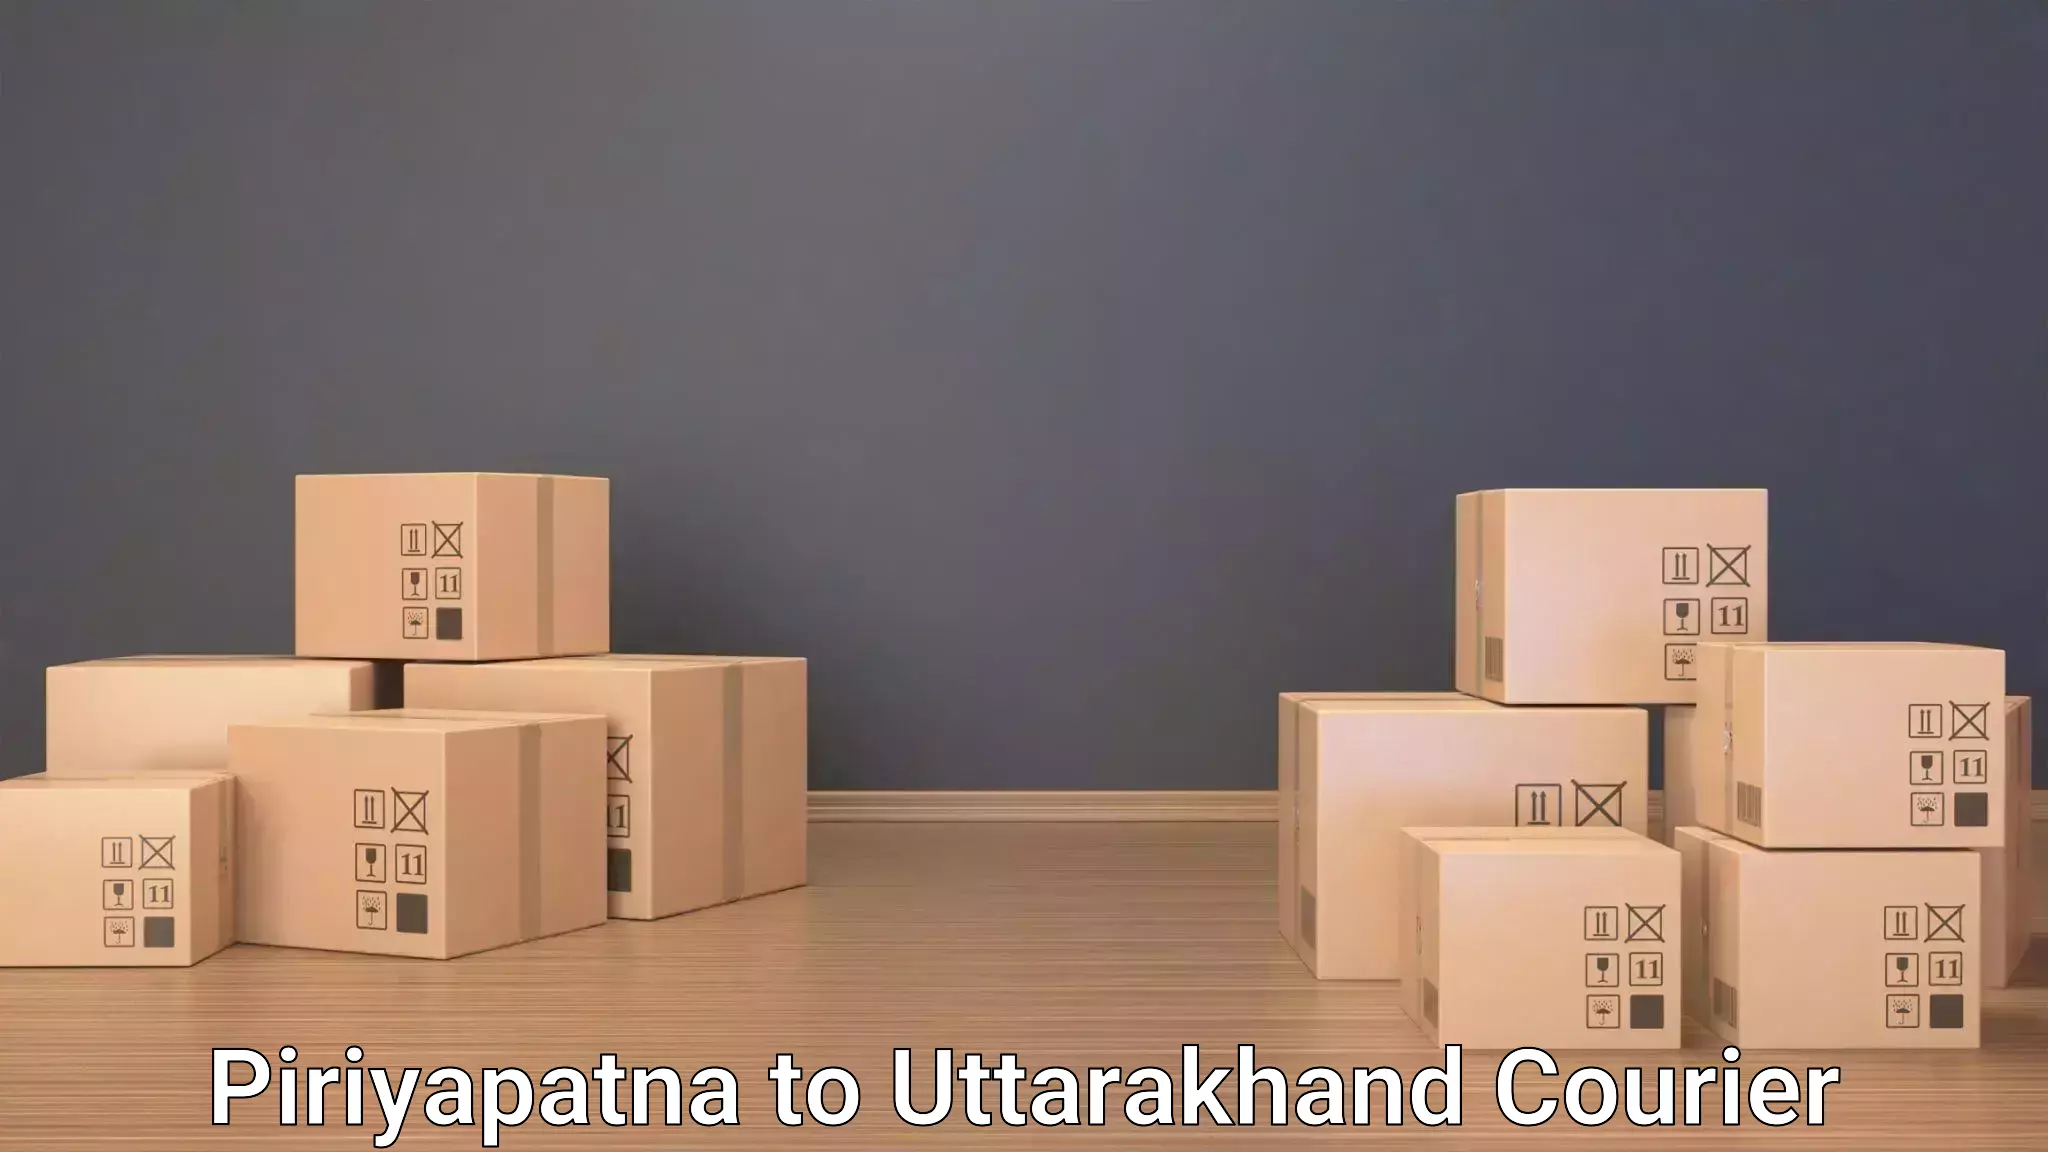 Luggage shipment specialists Piriyapatna to Gopeshwar